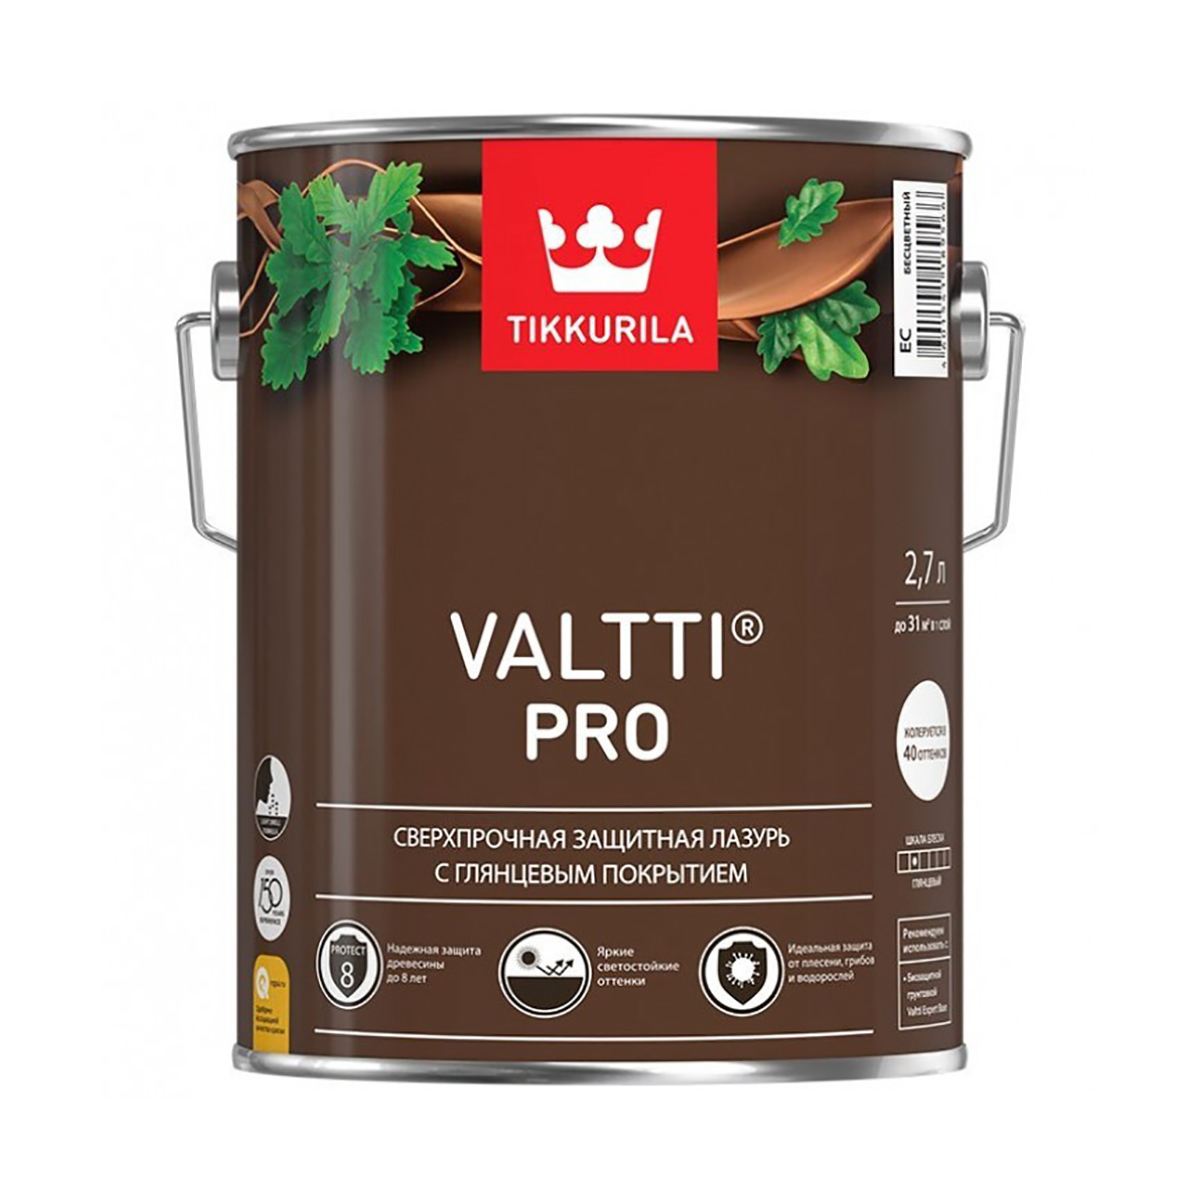 Антисептик для дерева Tikkurila Valtti Pro /  Валтти Про .